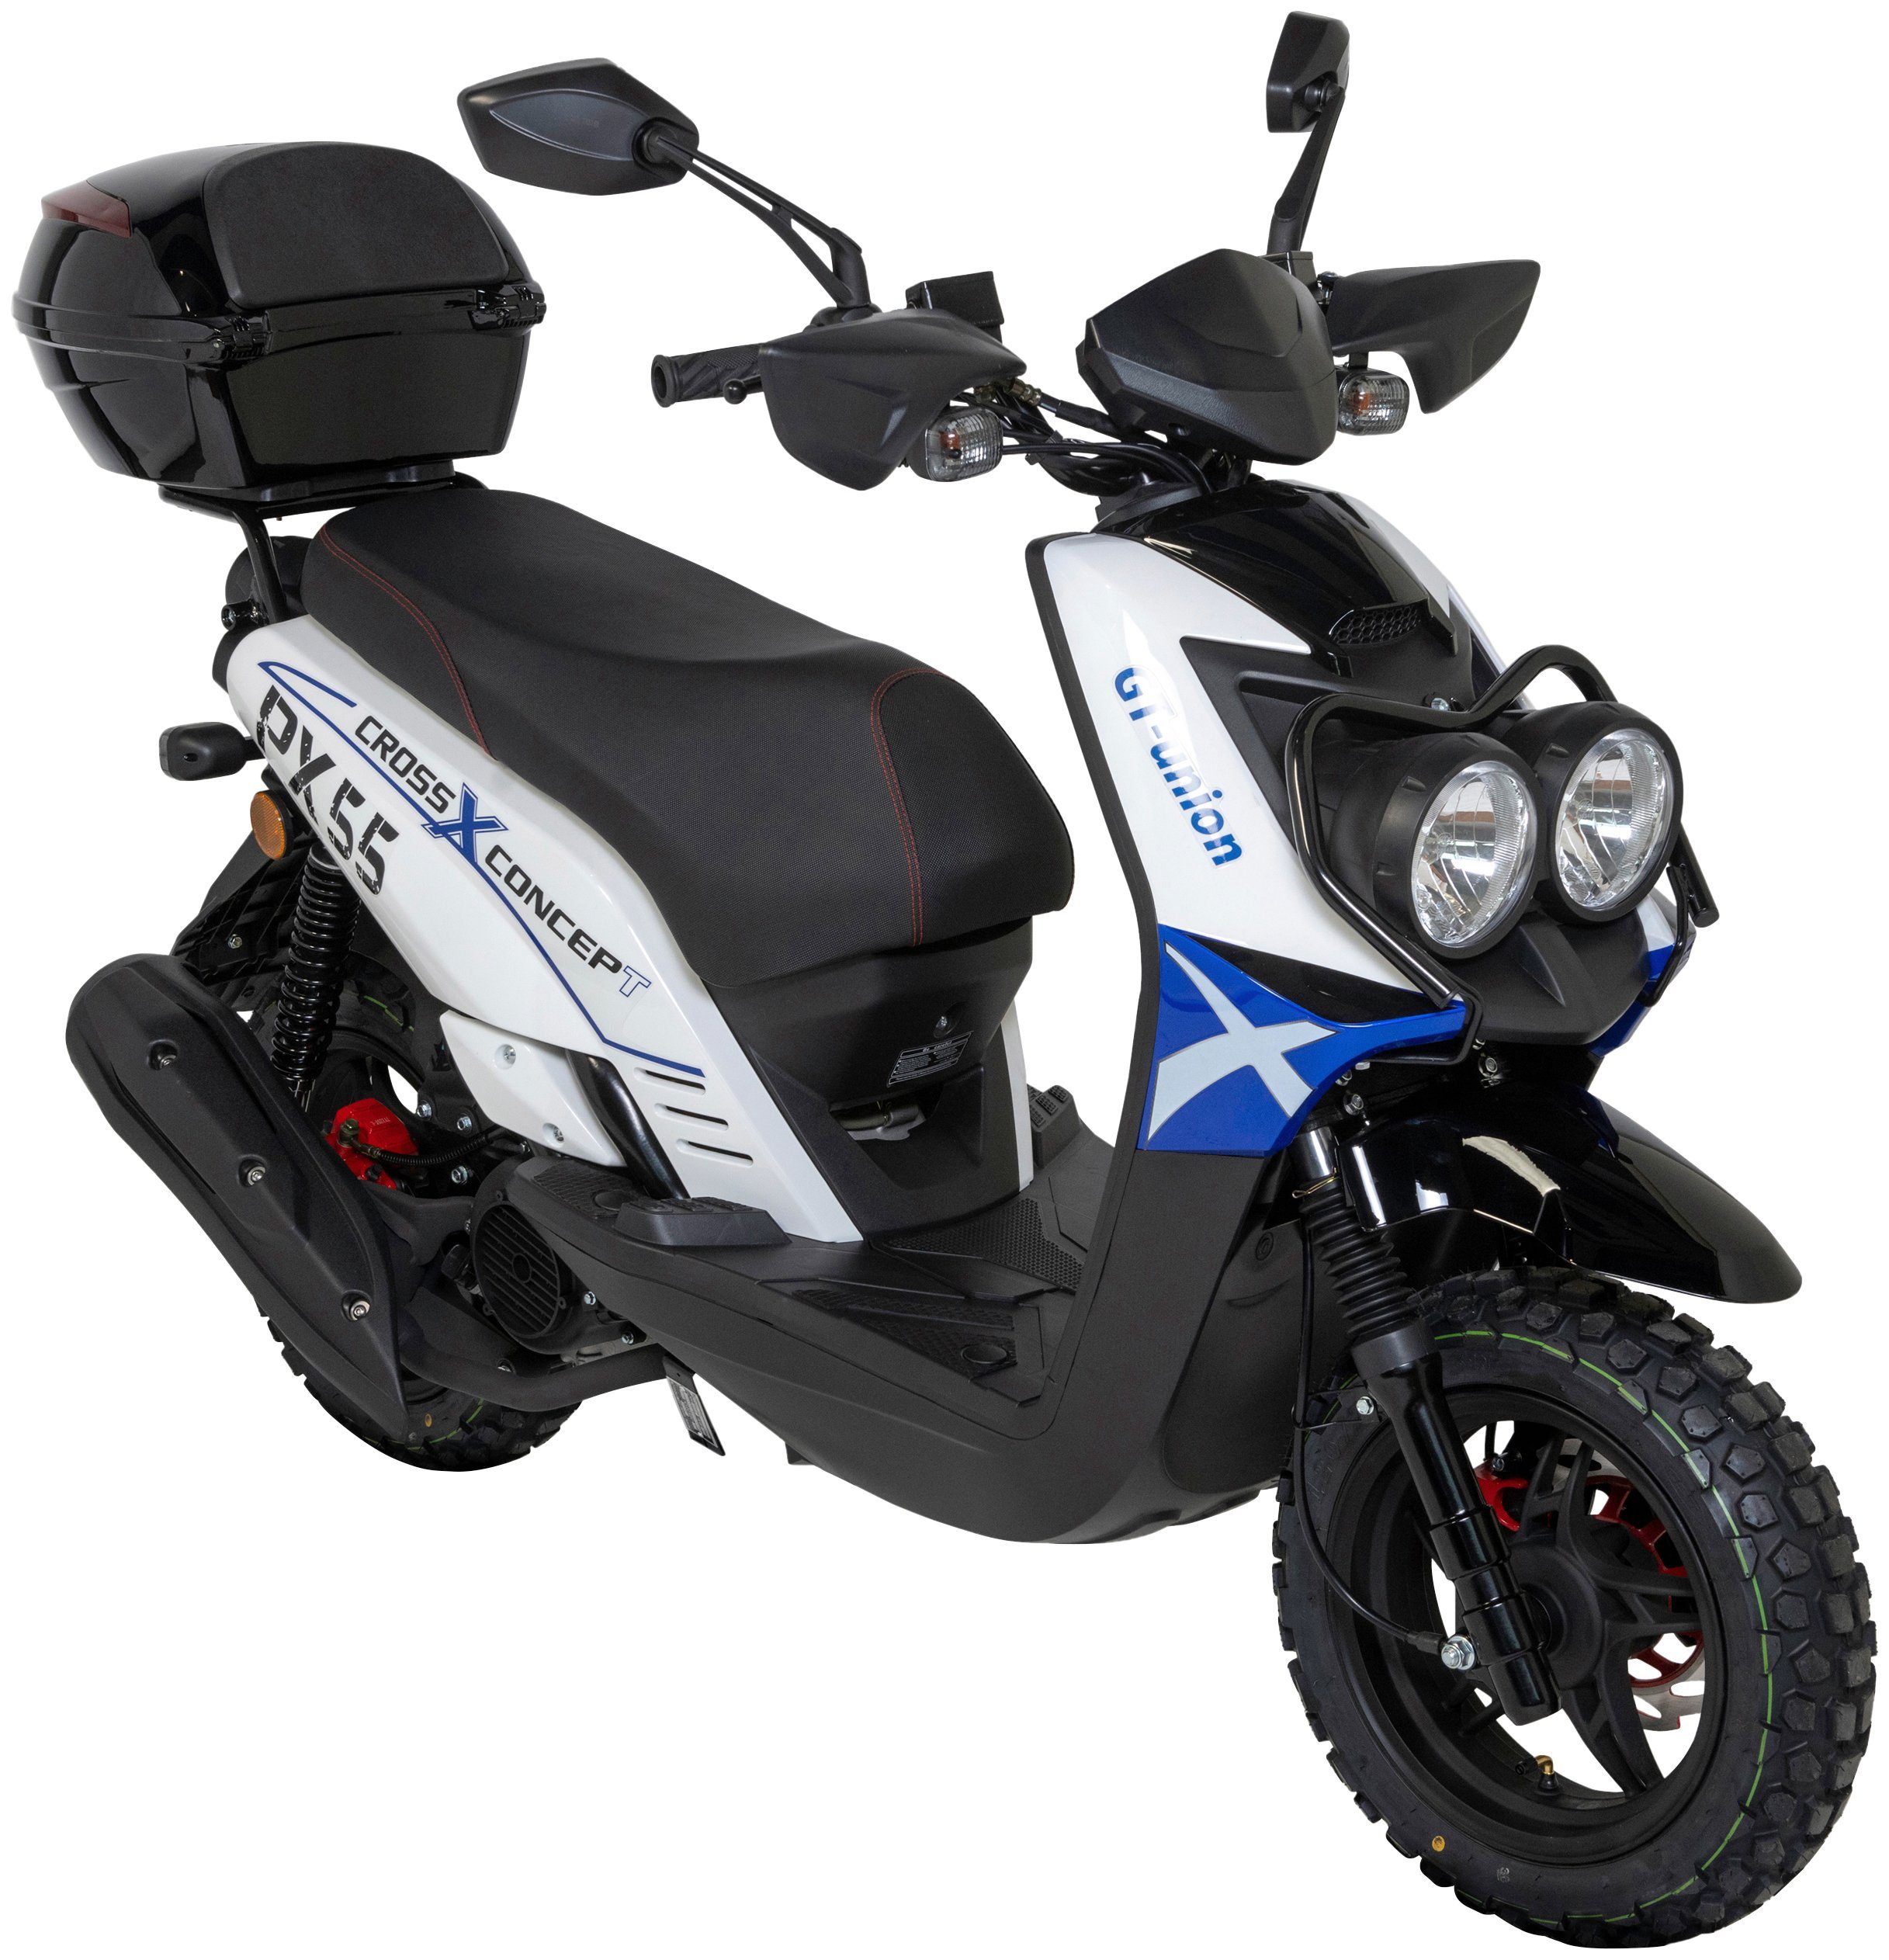 GT UNION Motorroller PX weiß/blau/schwarz 55 Euro 5, 45 ccm, km/h, Topcase 50 mit (Set), Cross-Concept